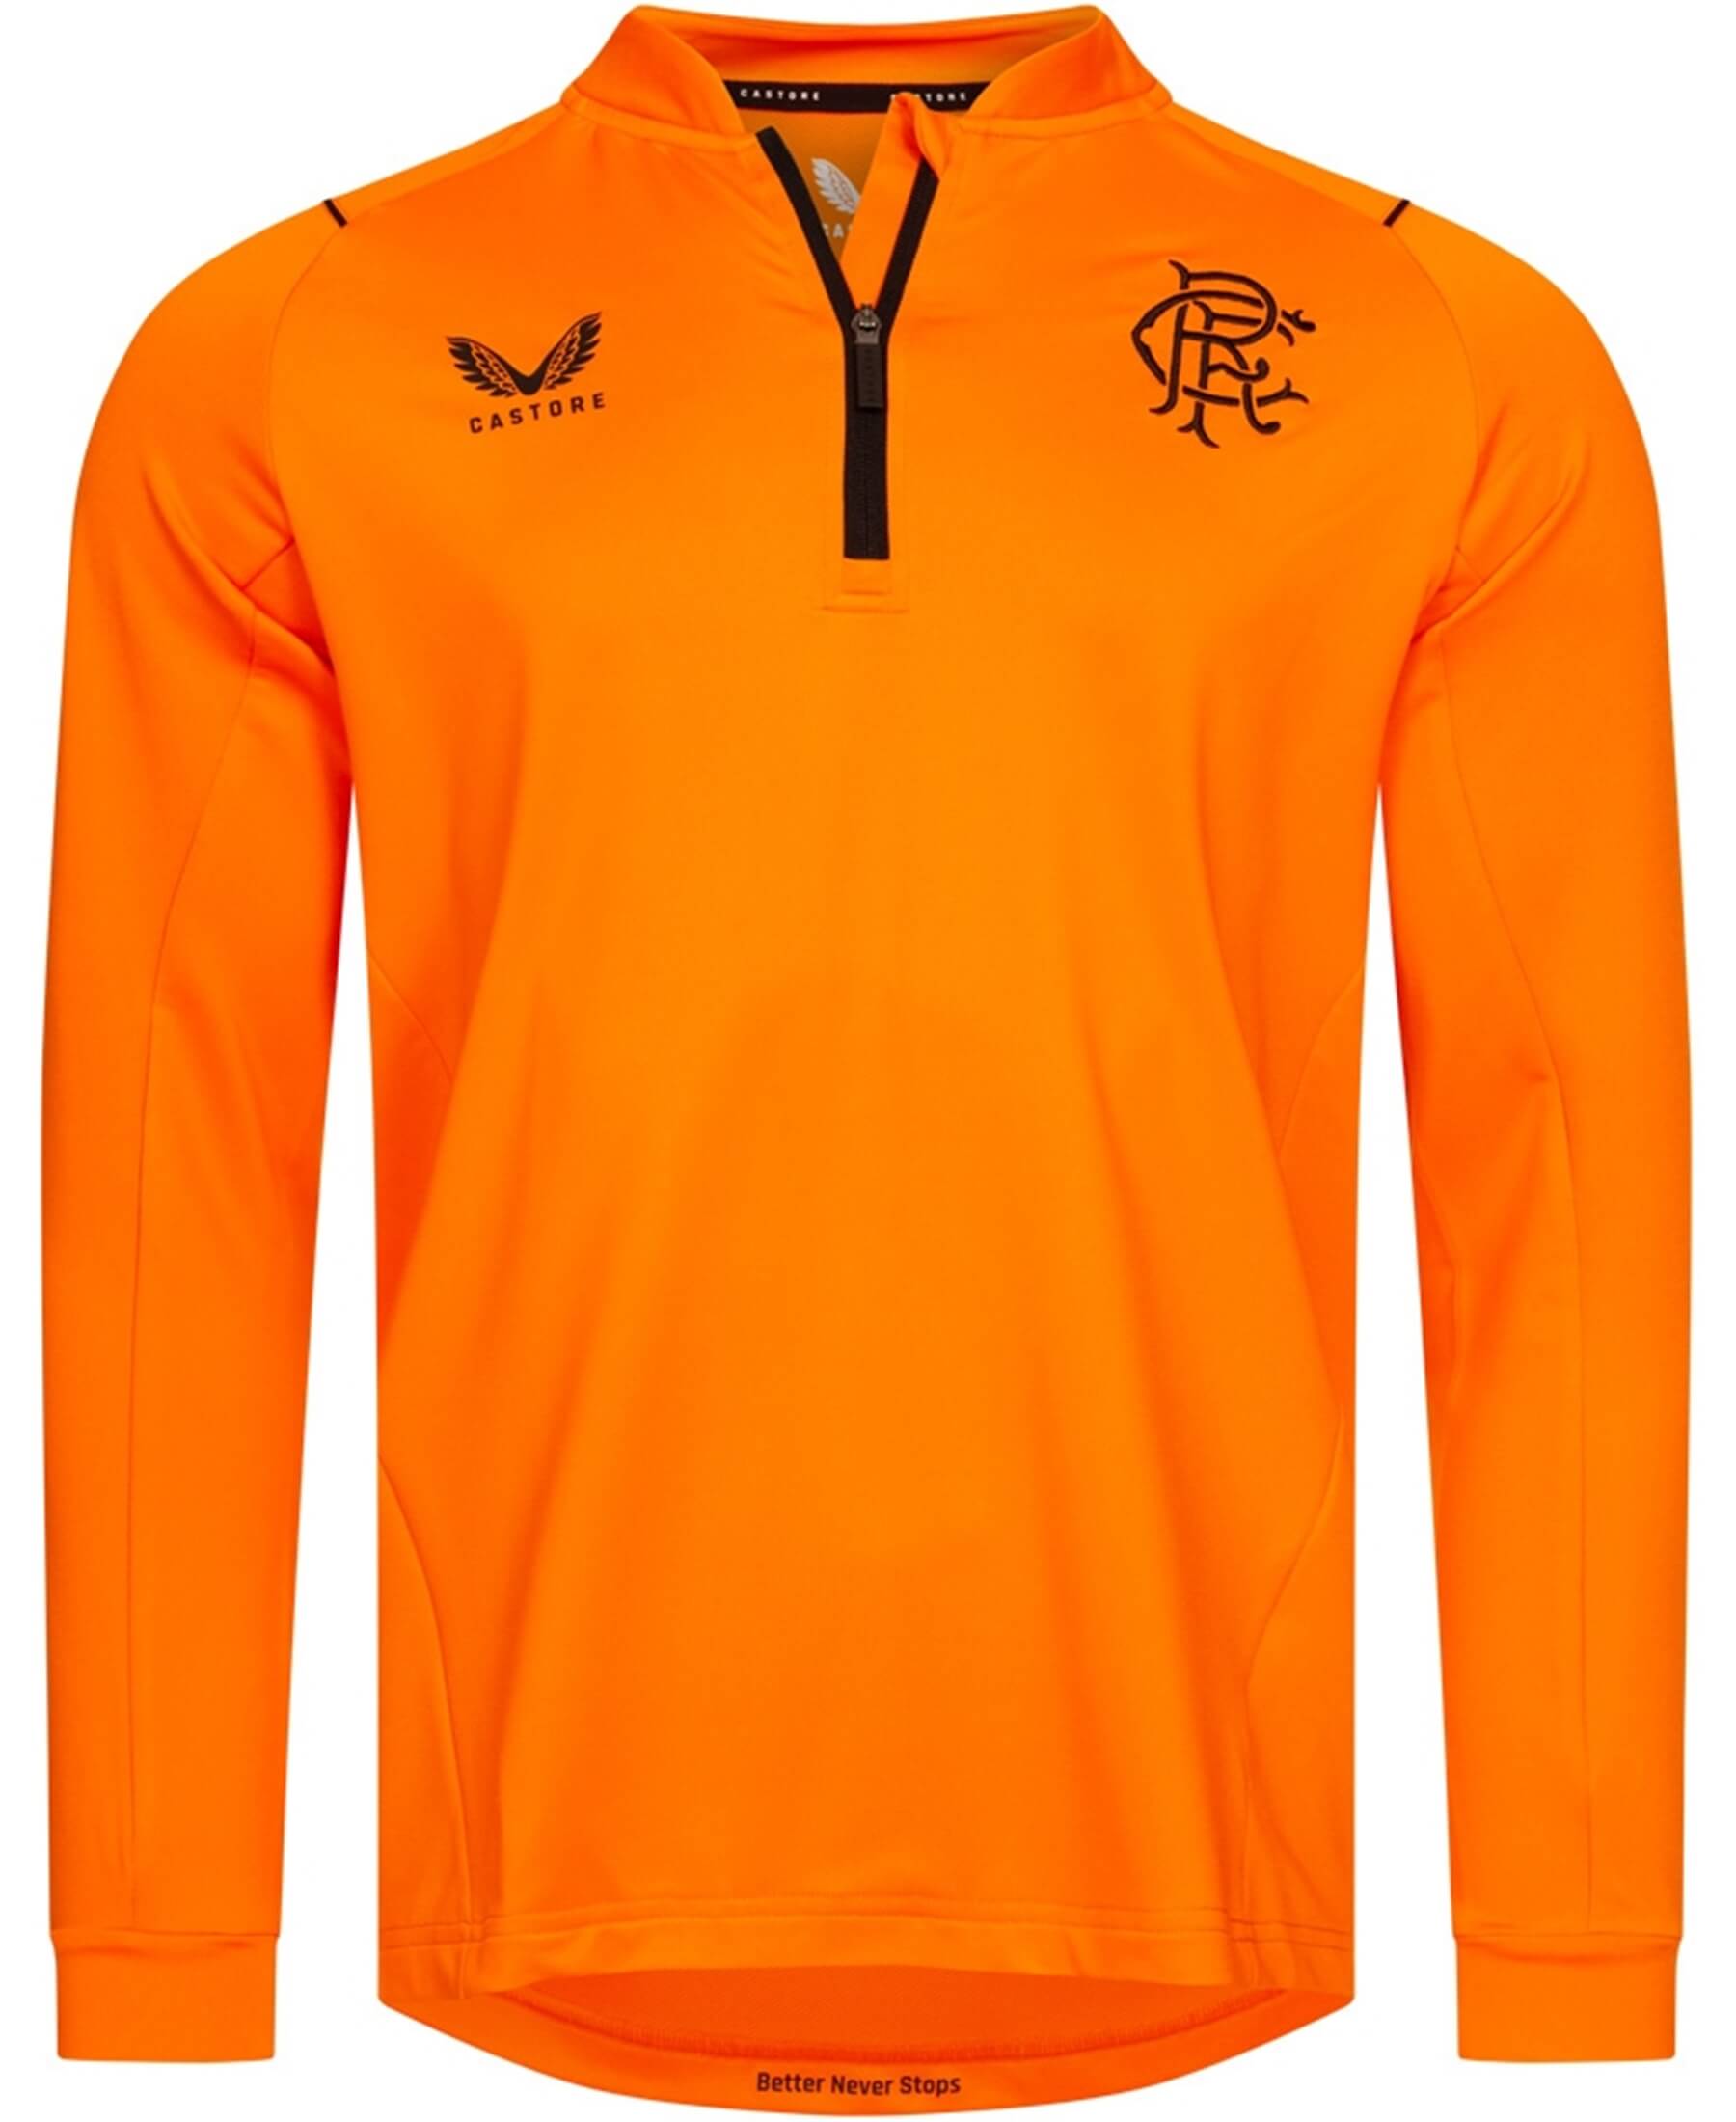 Entdecken Sie das offizielle Castore Glasgow Rangers FC 1/4-Zip Sweatshirt in leuchtendem Orange (Herstellernummer: TM0511-Orange) bei SHOP4TEAMSPORT. Dieses hochwertige Sweatshirt bietet besten Tragekomfort und Stil für Fans. Zeigen Sie Ihre Unterstützung im Stadion und im Alltag. Ein Must-Have für jeden Rangers FC-Anhänger. Perfekte Kombination aus Mode und Teamgeist.